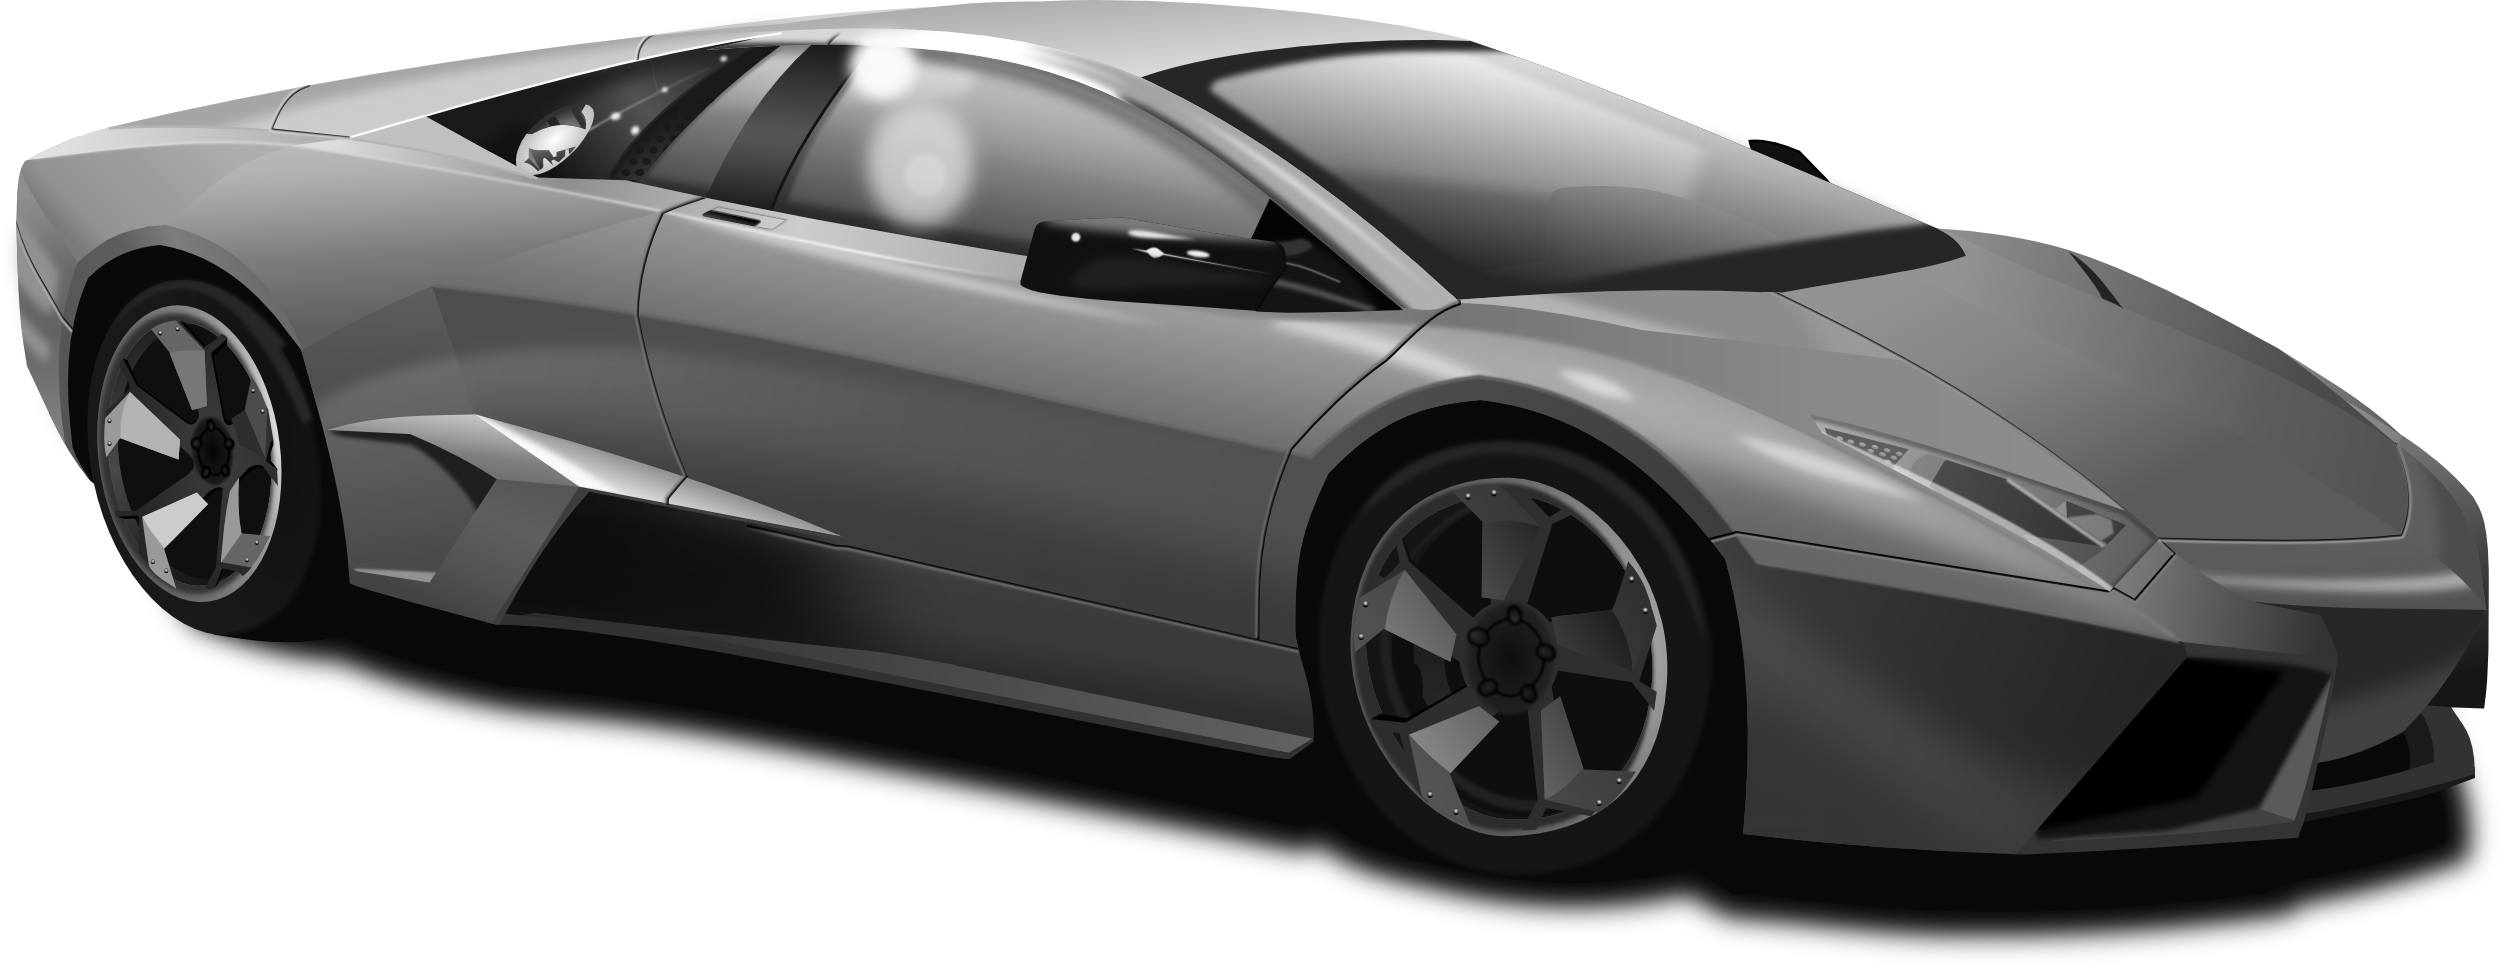 File:Lamborghini Reventon.png